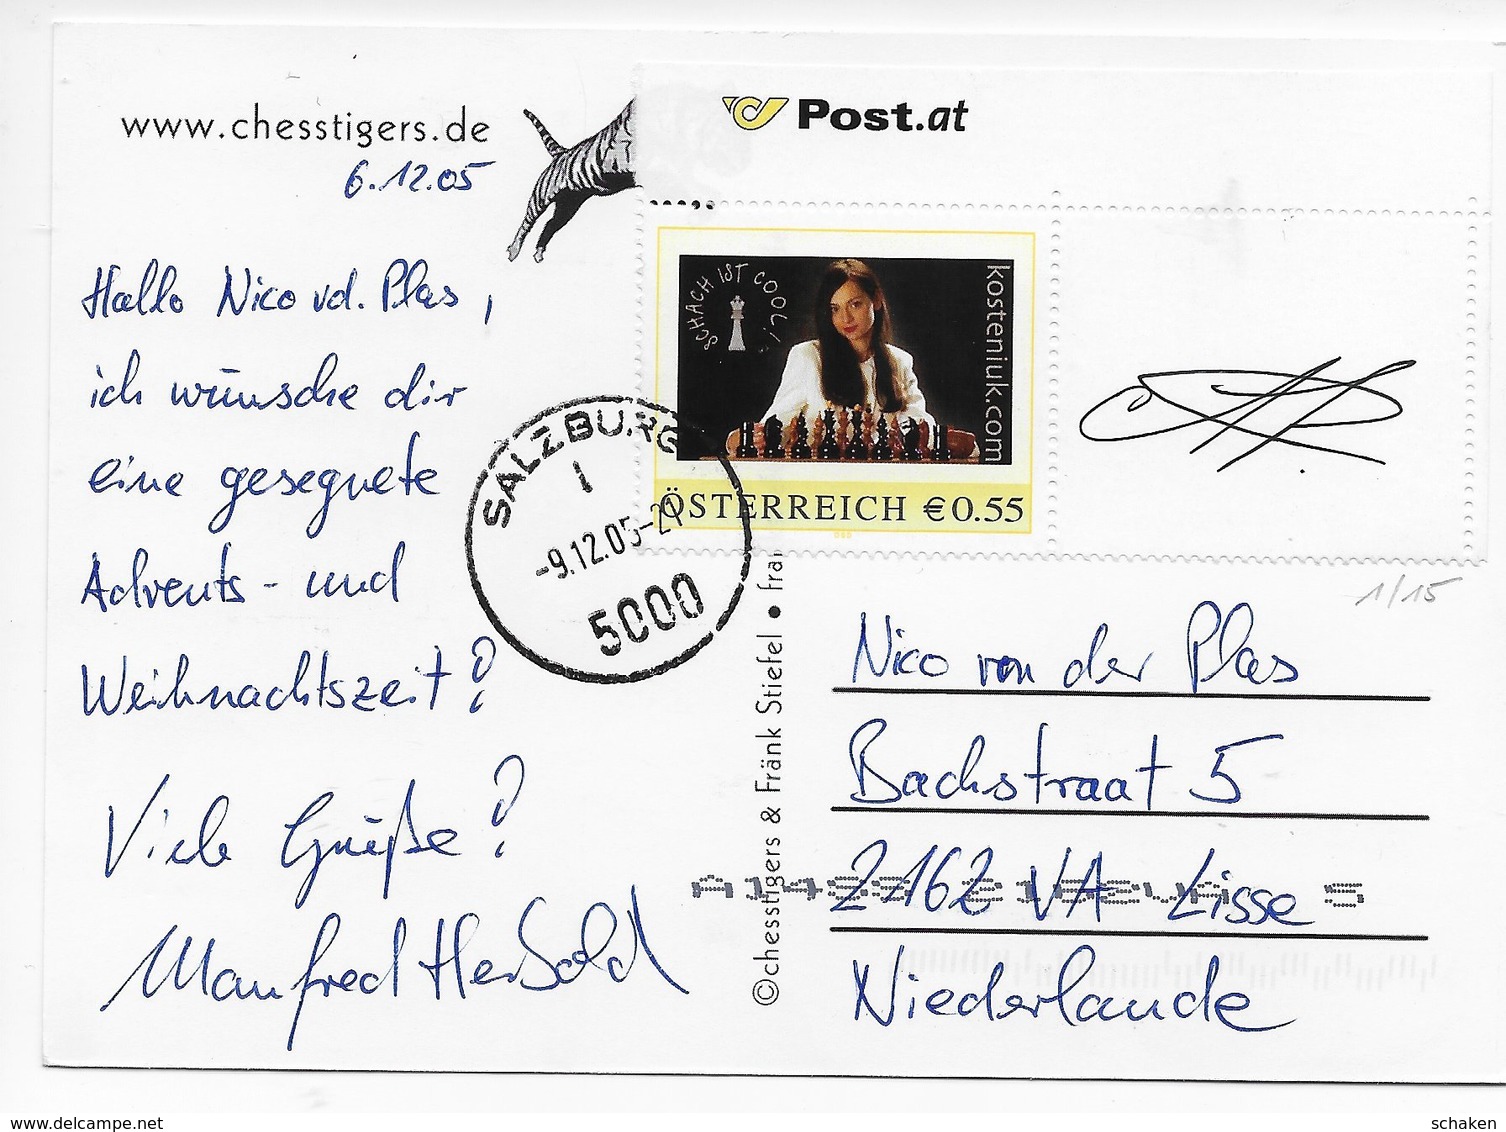 Osterreich Austria ; chess schach ajedrez; ;Spezial Sammlung;  personalisierte Marken , pers. stamps/shts/cvrs + Katalog